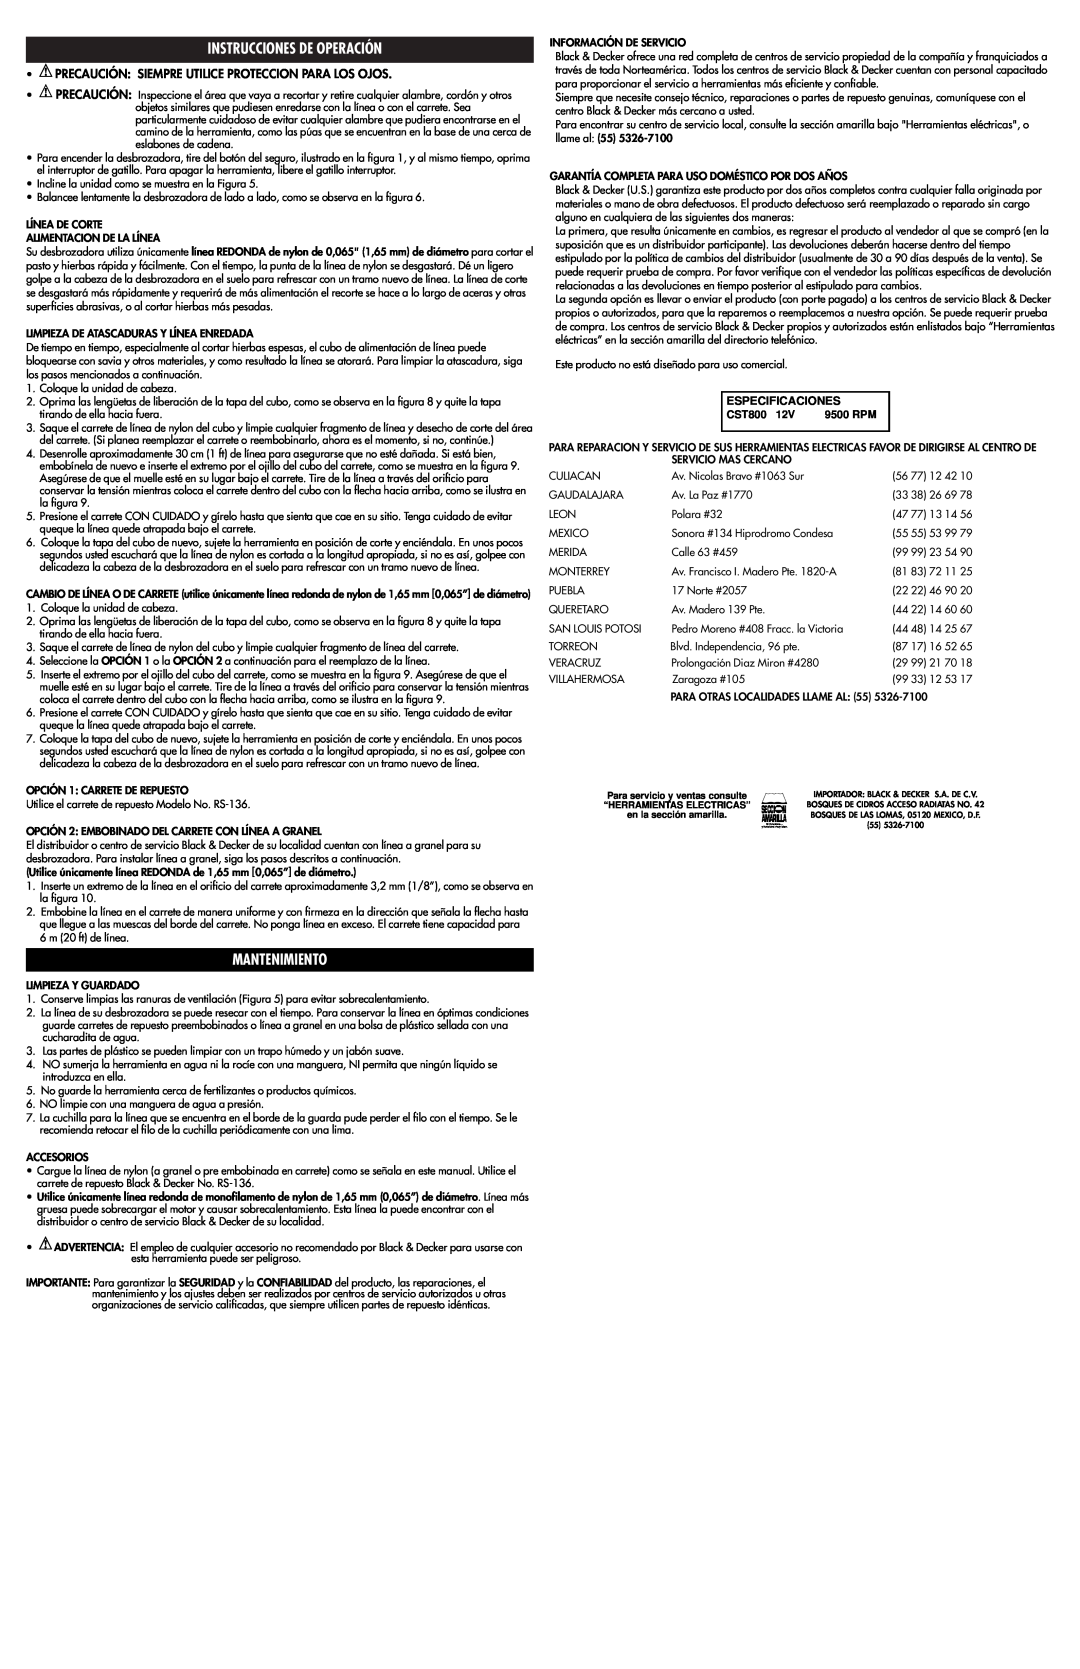 Black & Decker 598098-00 instruction manual Instrucciones De Operación, Mantenimiento, Especificaciones, CST800, 9500 RPM 